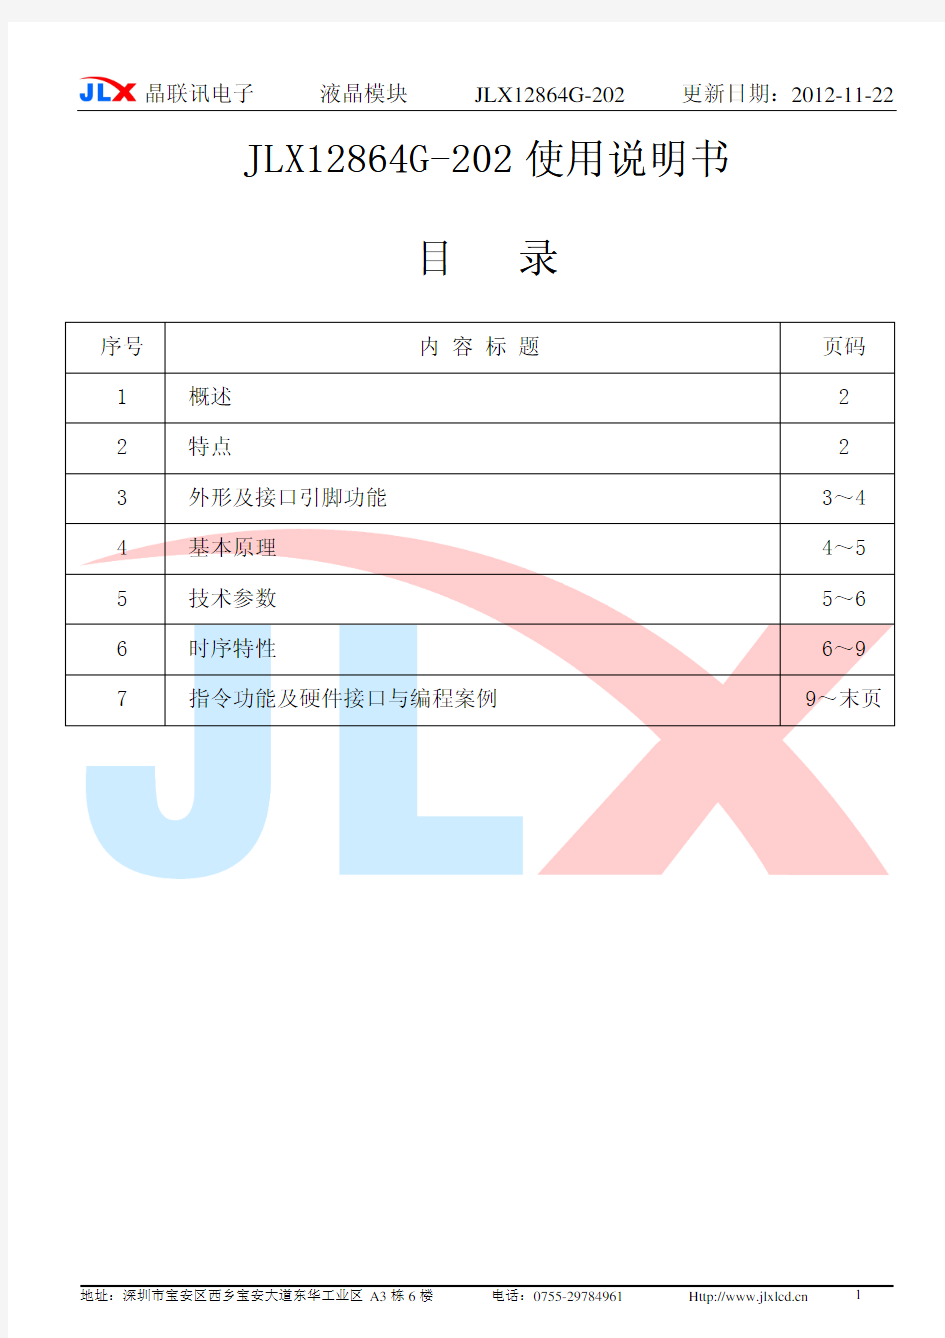 JLX12864G-202中文说明书